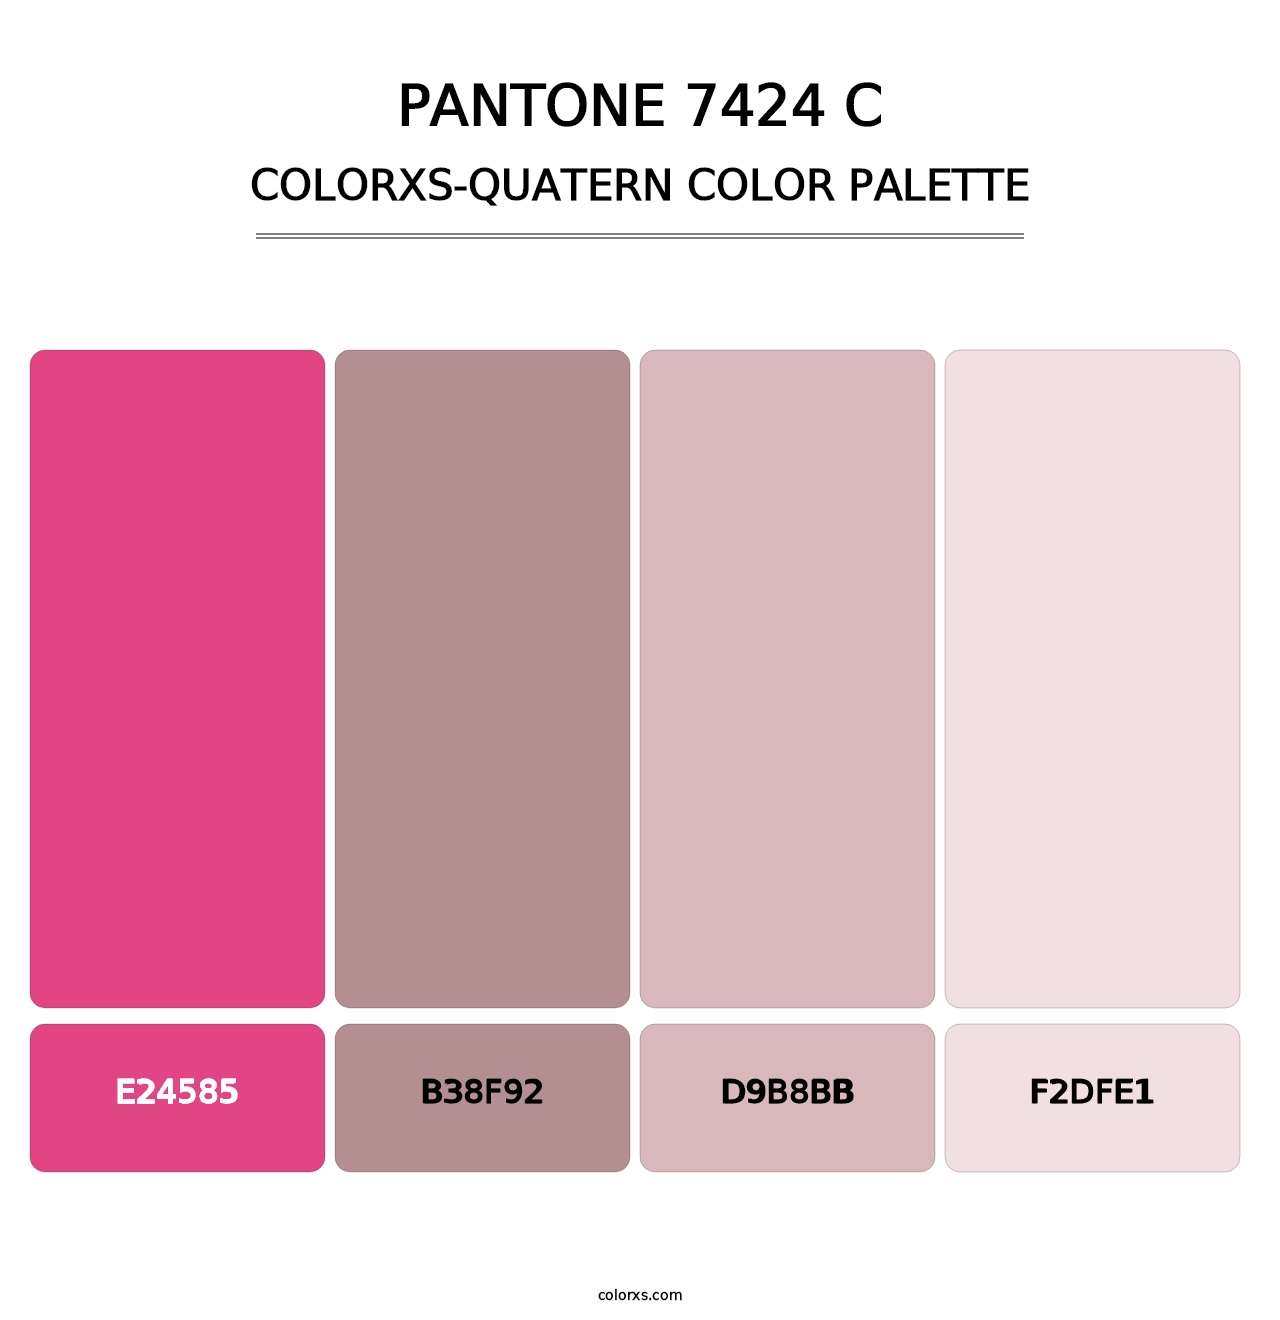 PANTONE 7424 C - Colorxs Quatern Palette